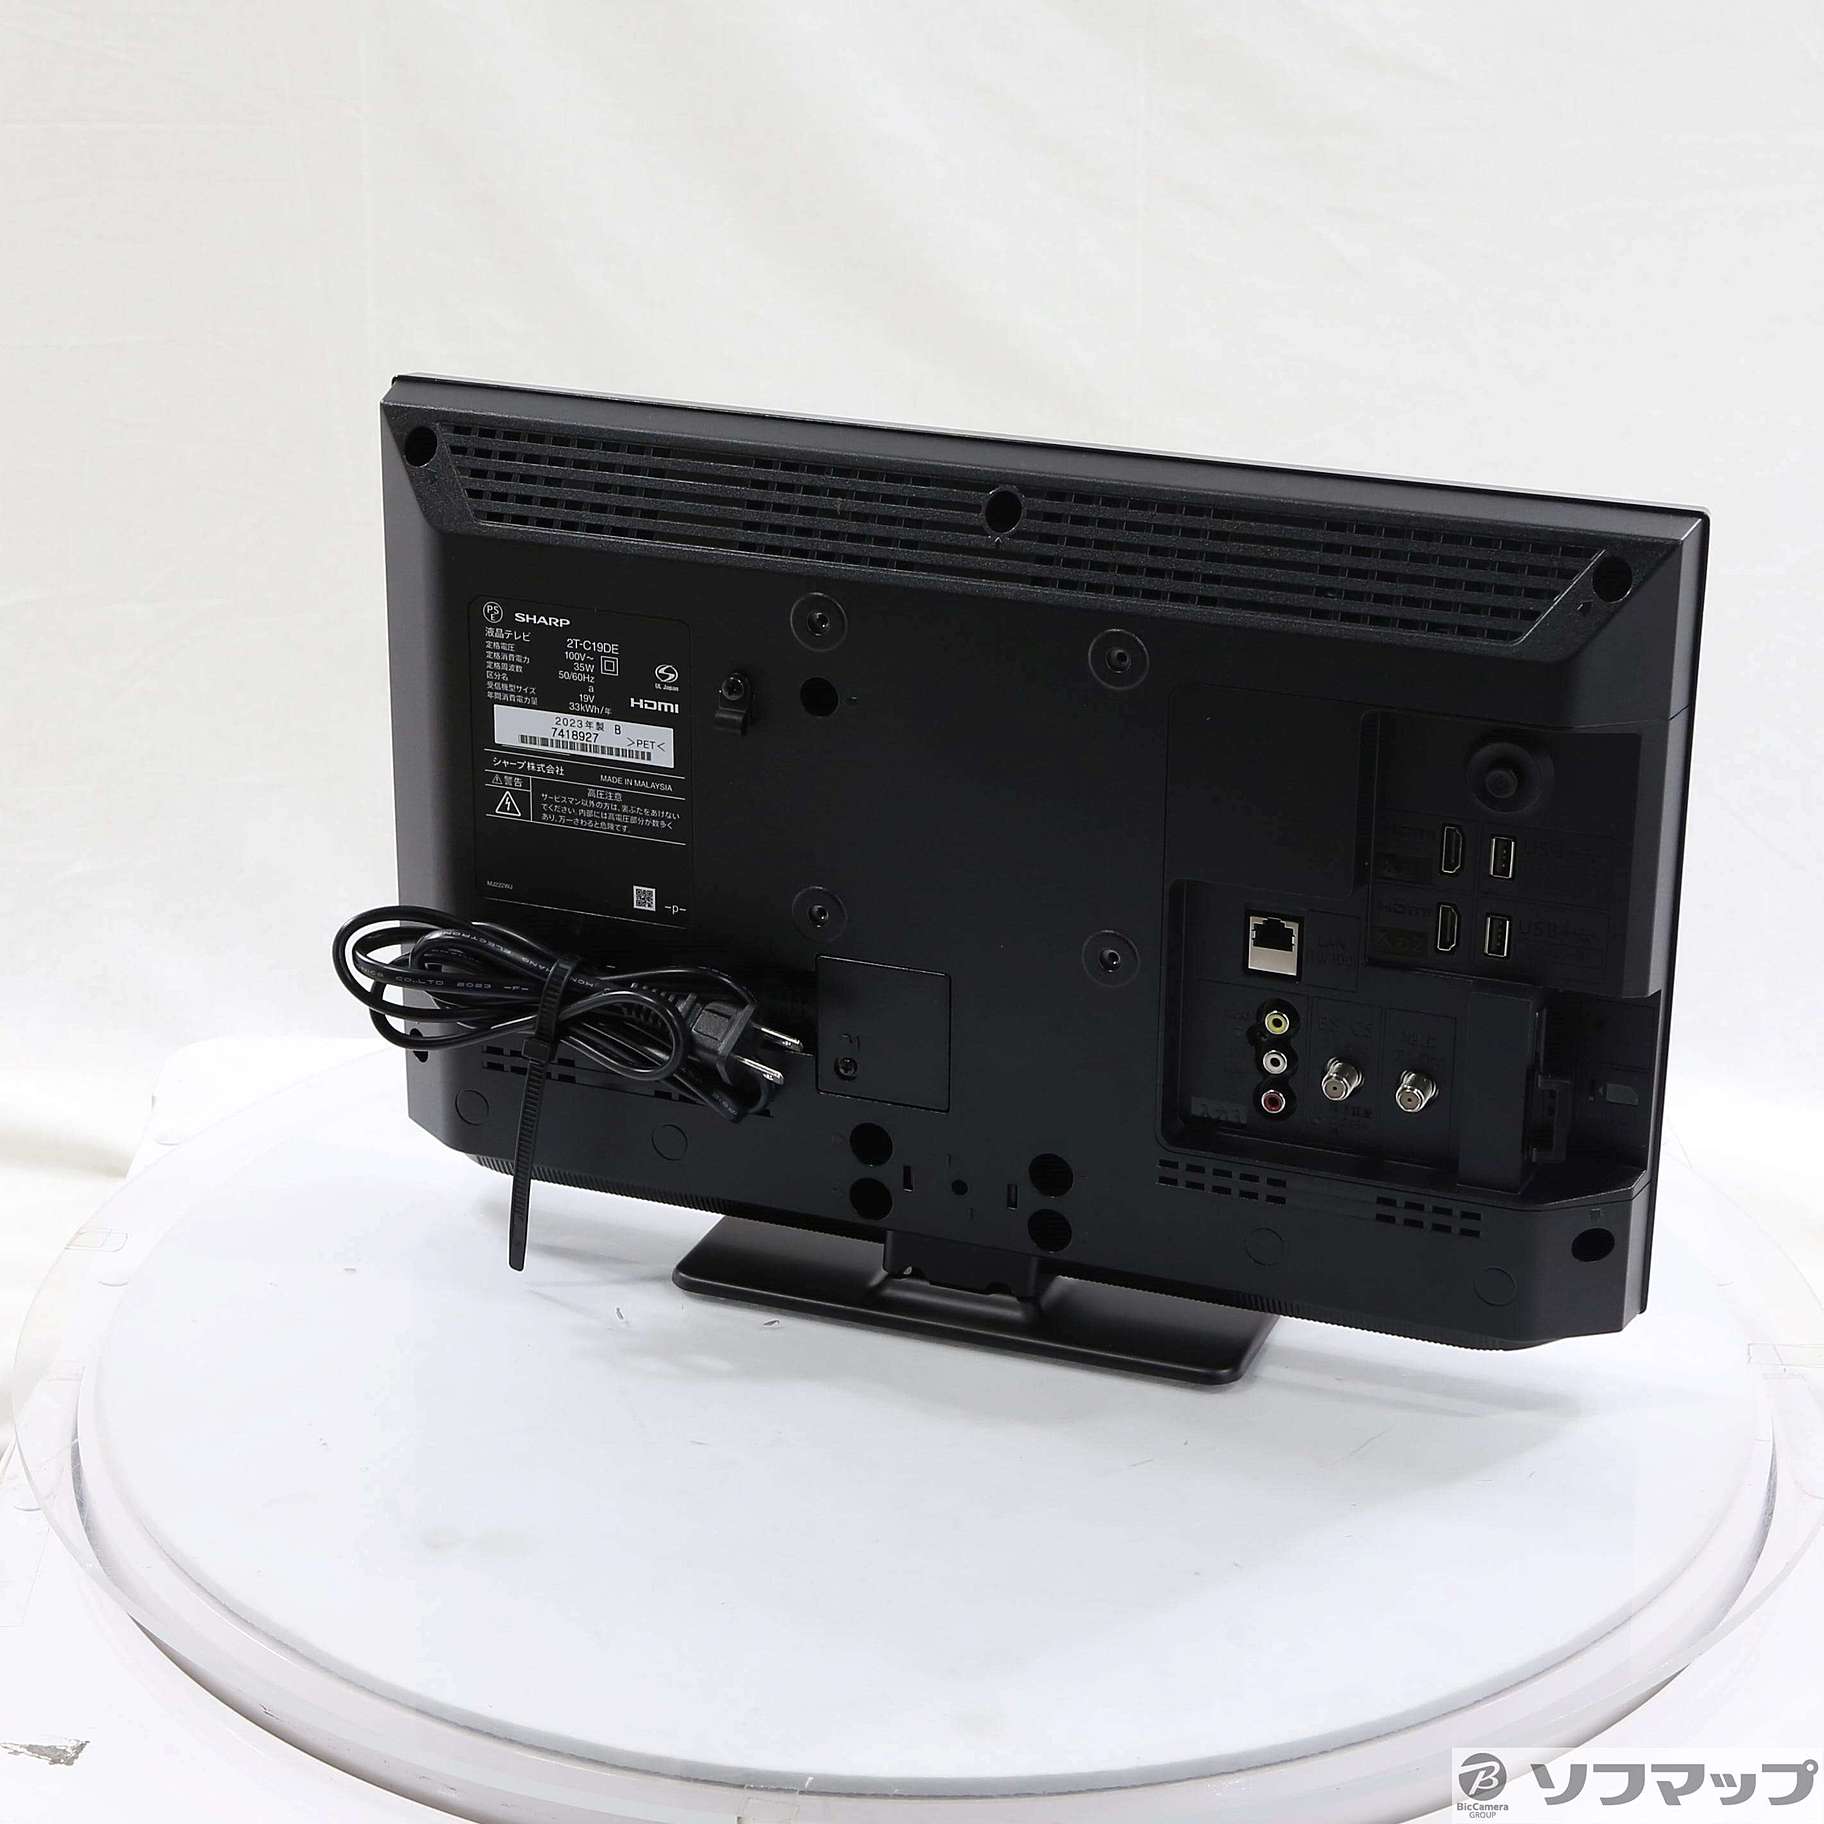 シャープ AQUOS ハイビジョン液晶テレビ(2T-C19DE-B) - テレビ、映像機器